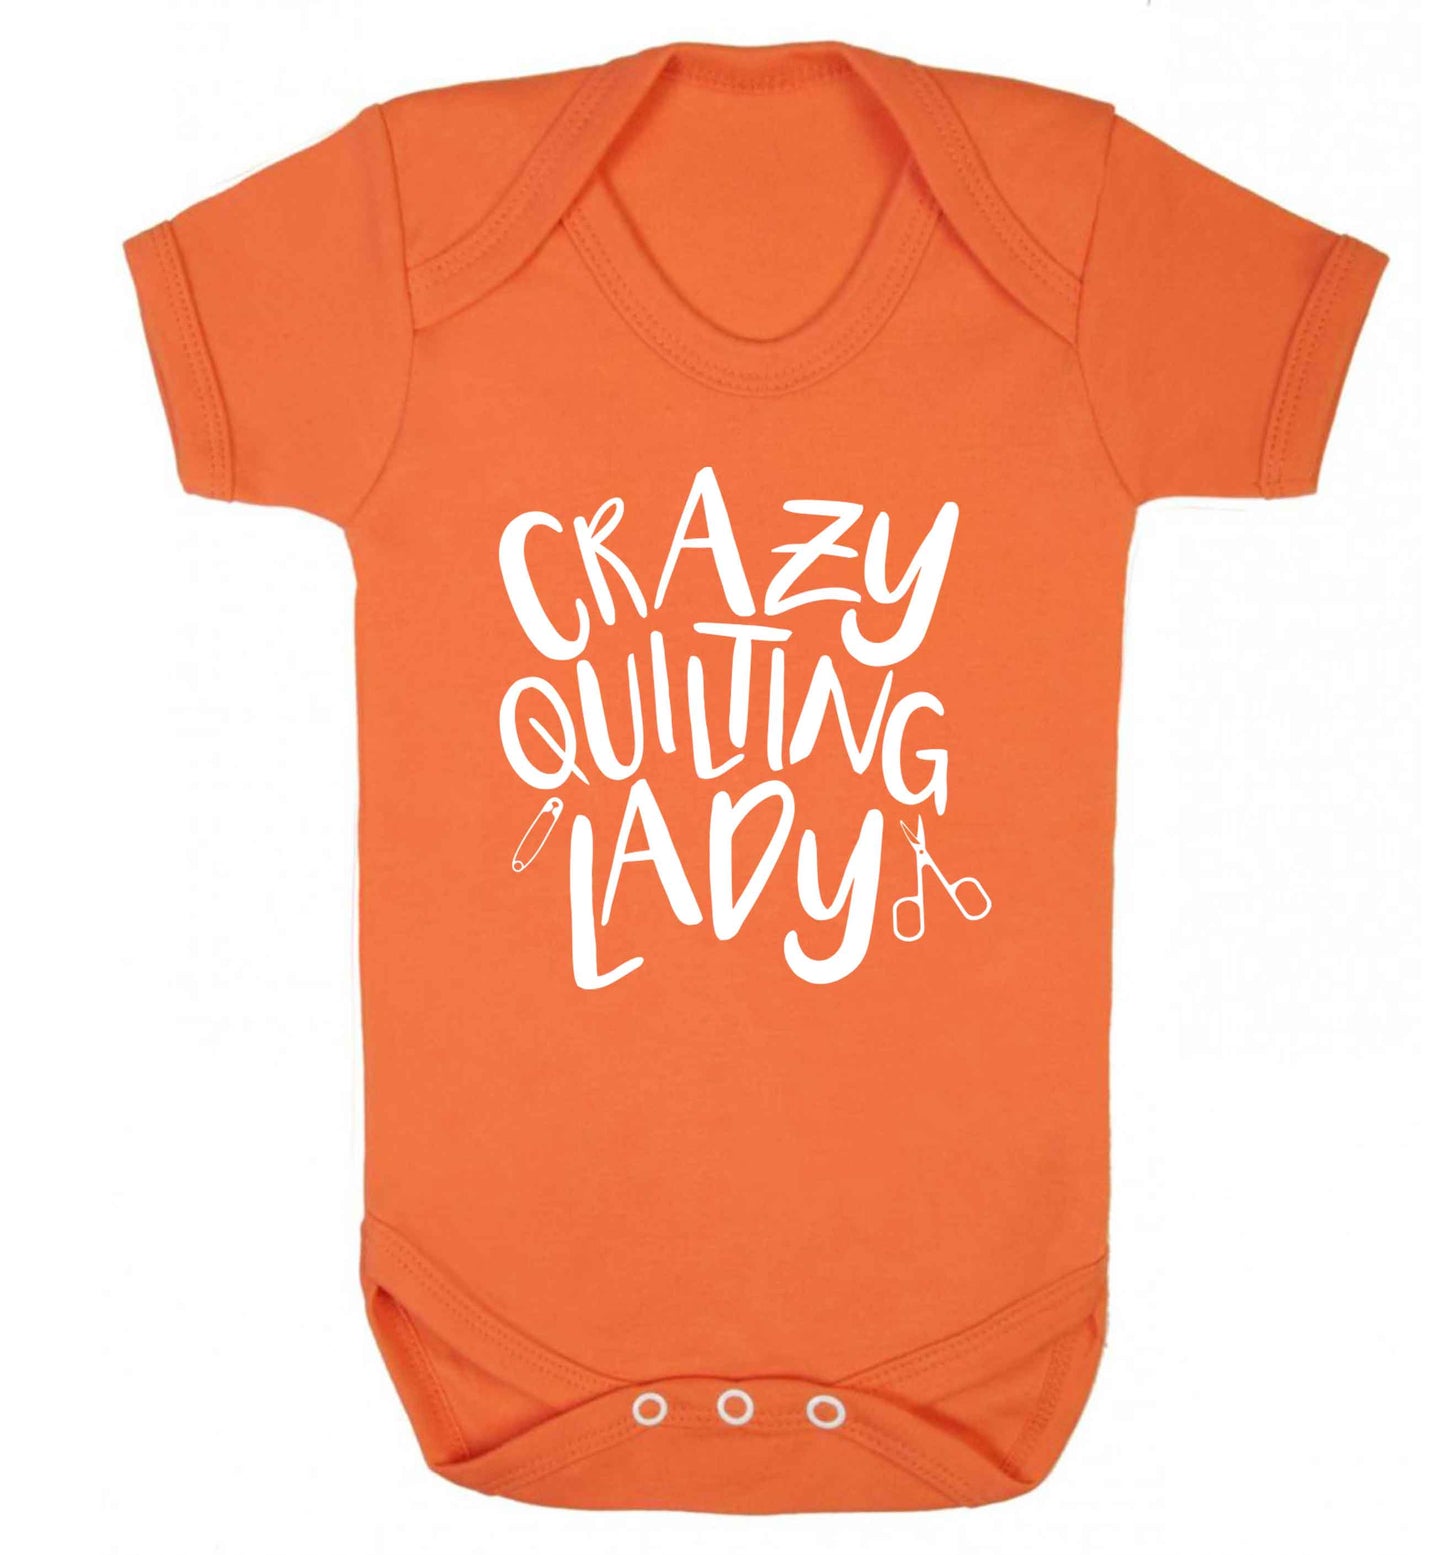 Crazy quilting lady Baby Vest orange 18-24 months